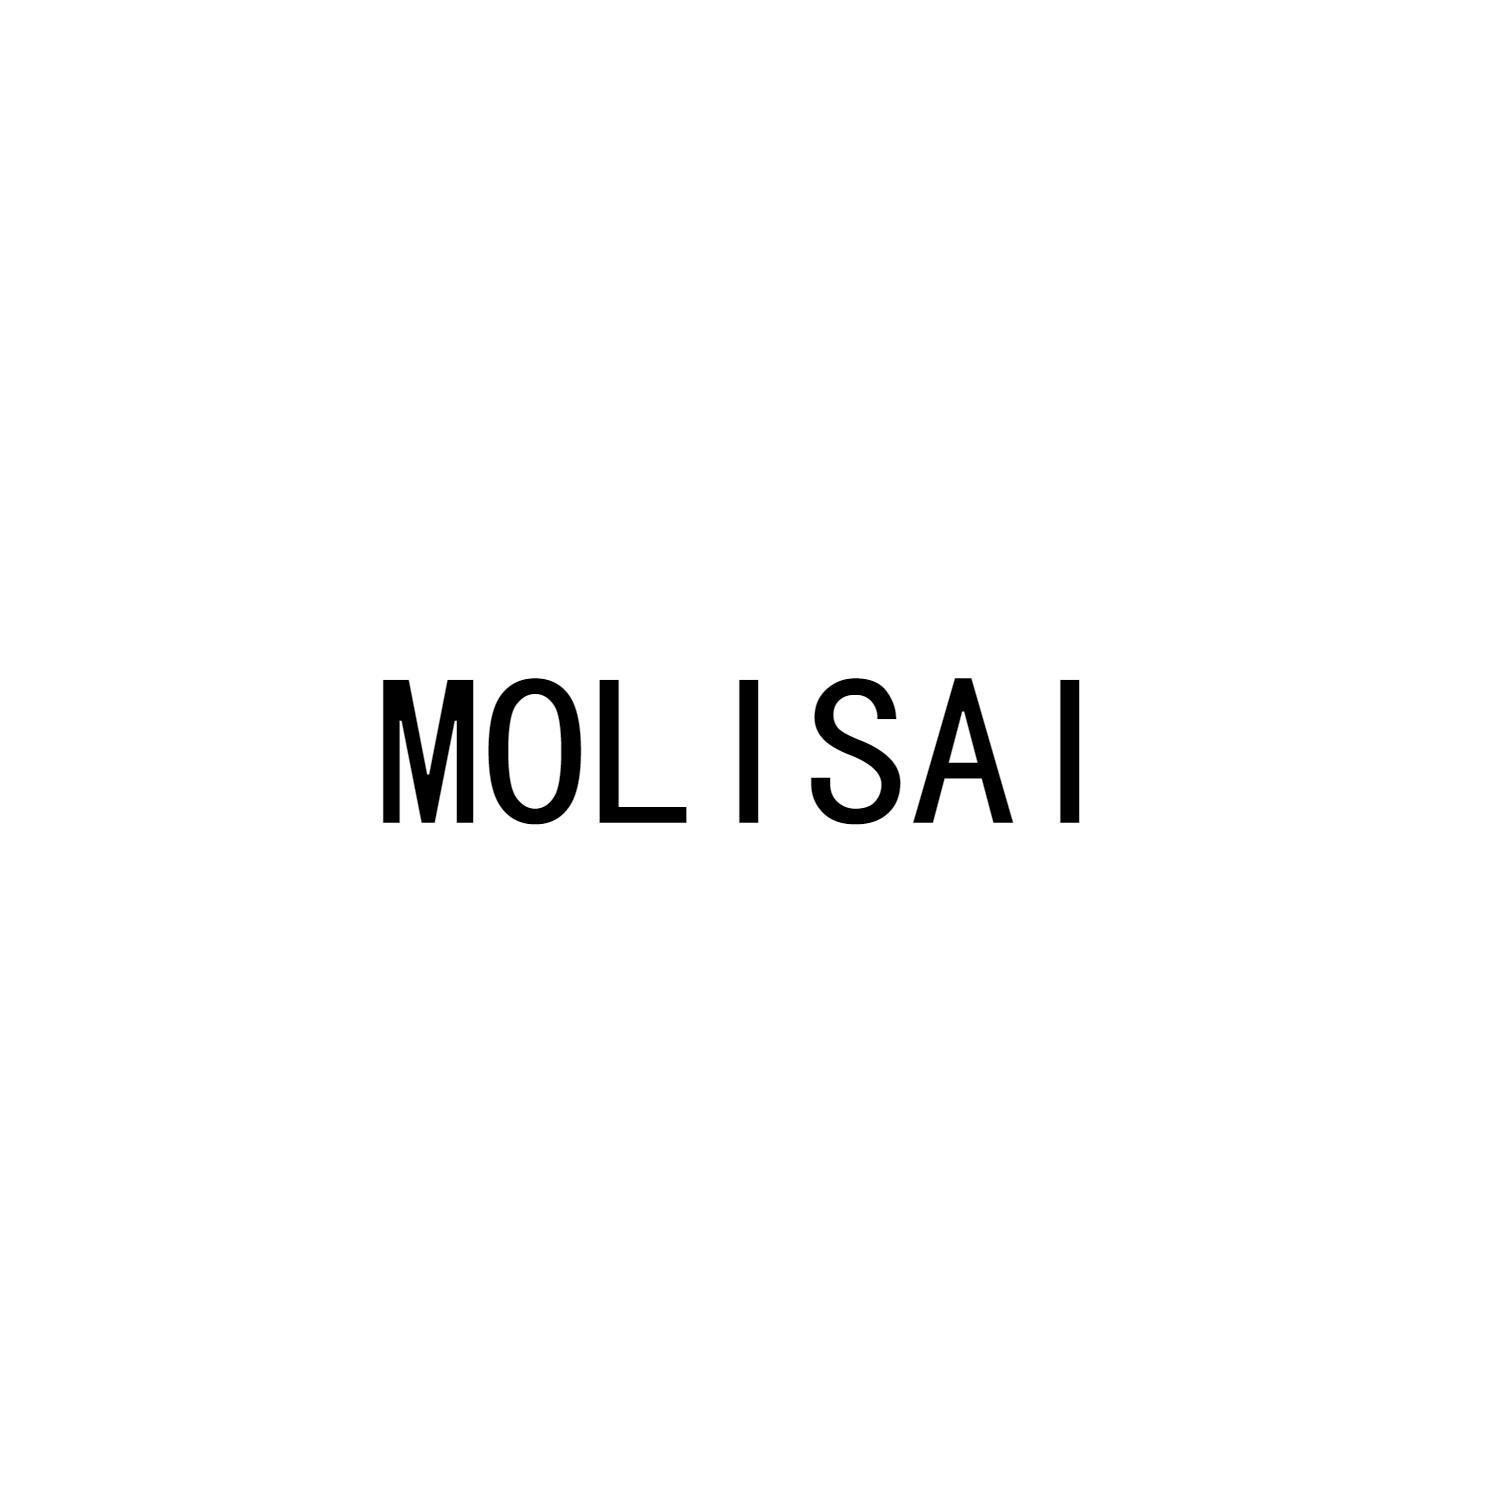 MOLISAI